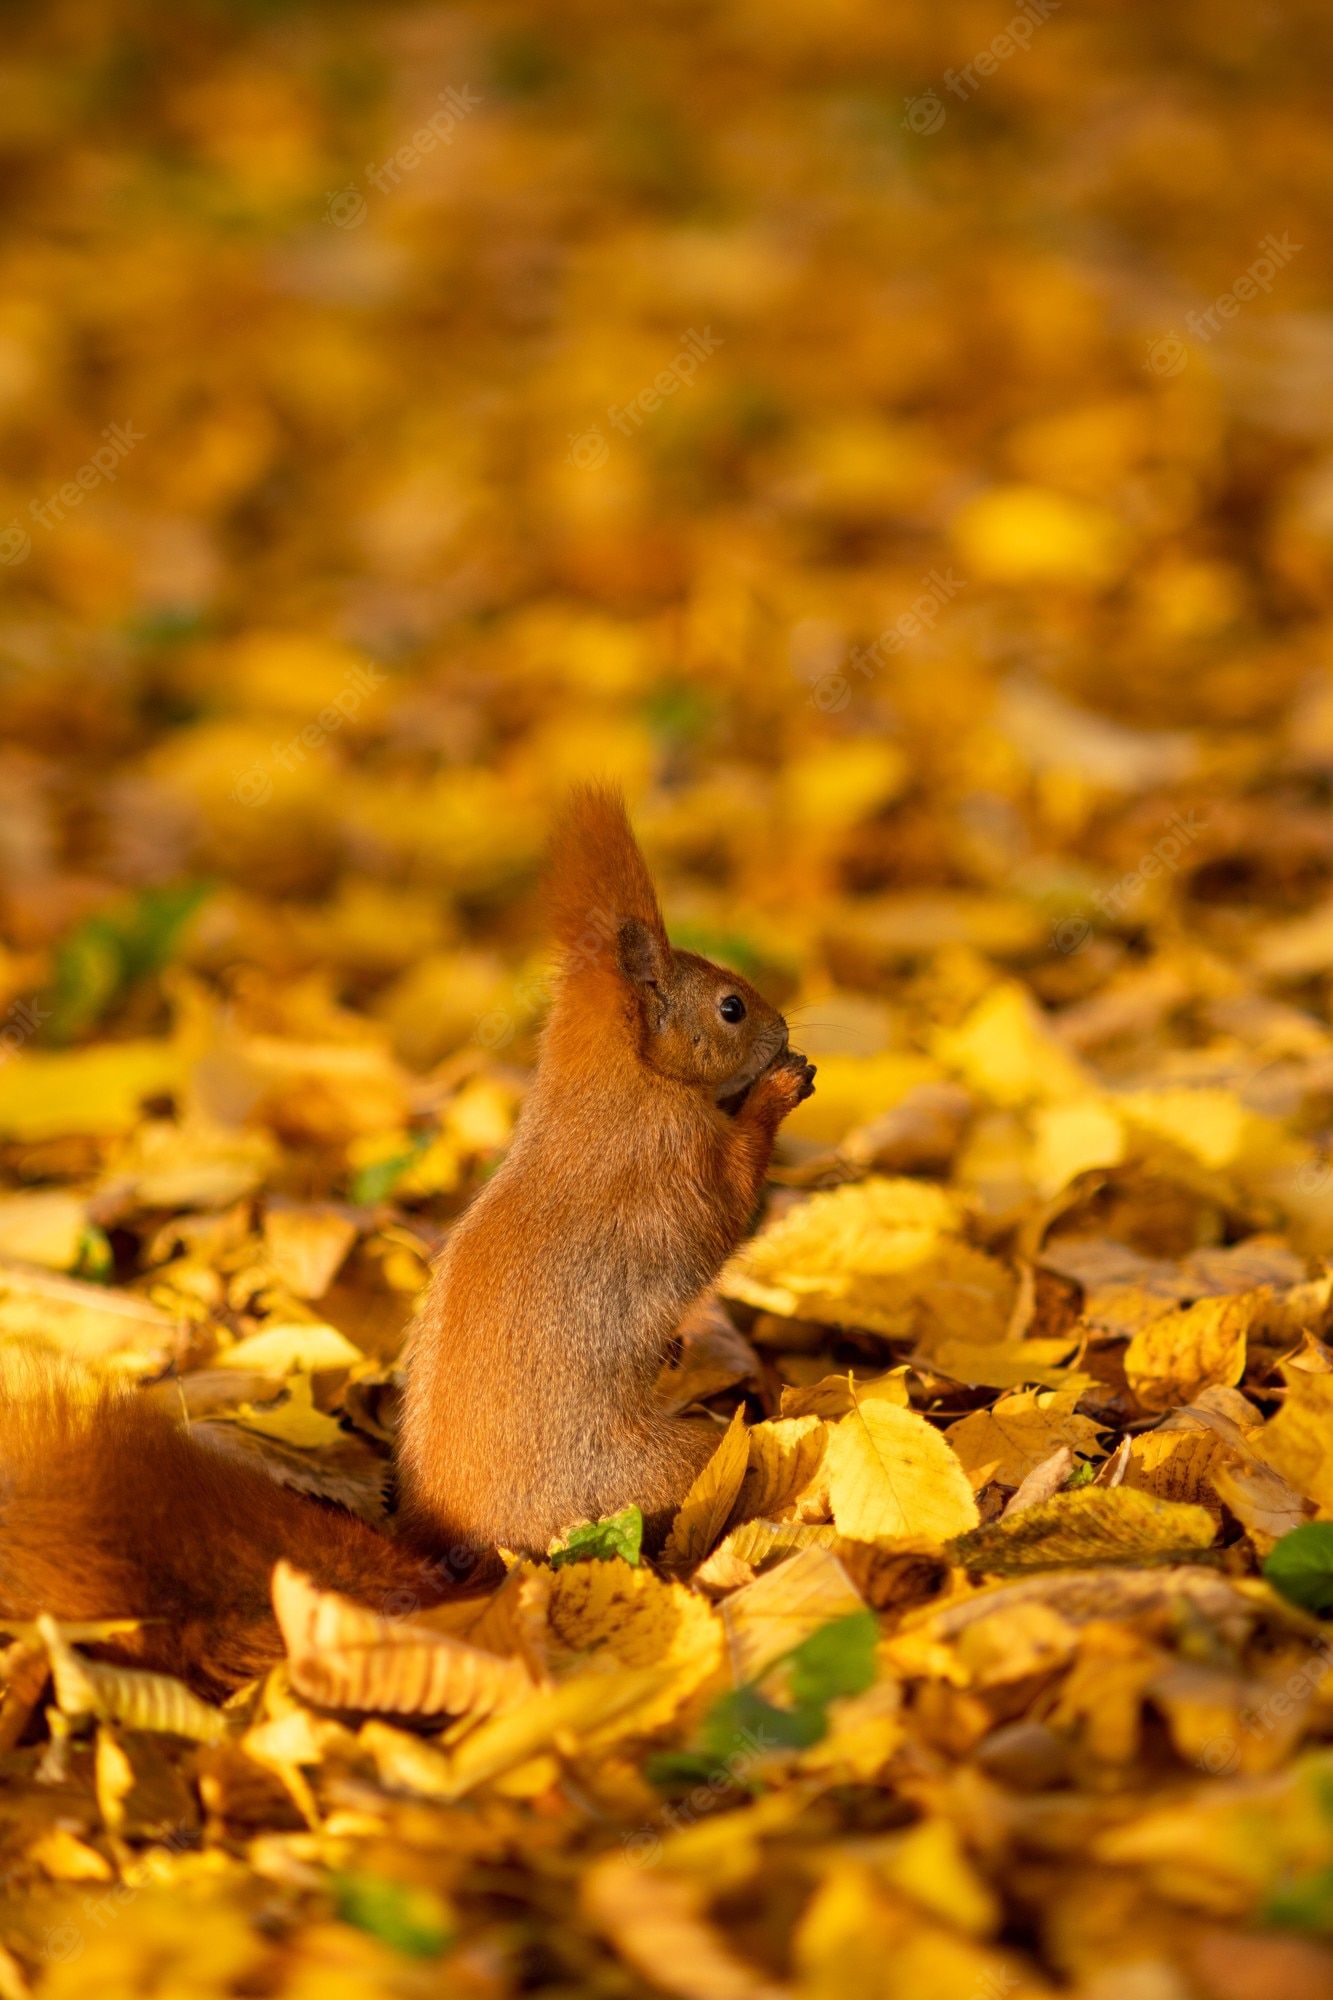  Eichhornchen Hintergrundbild 1333x2000. Herbst. ein eichhörnchen sitzt auf abgefallenen blättern und isst eine walnuss. nahaufnahmeportrait. sonniger tag